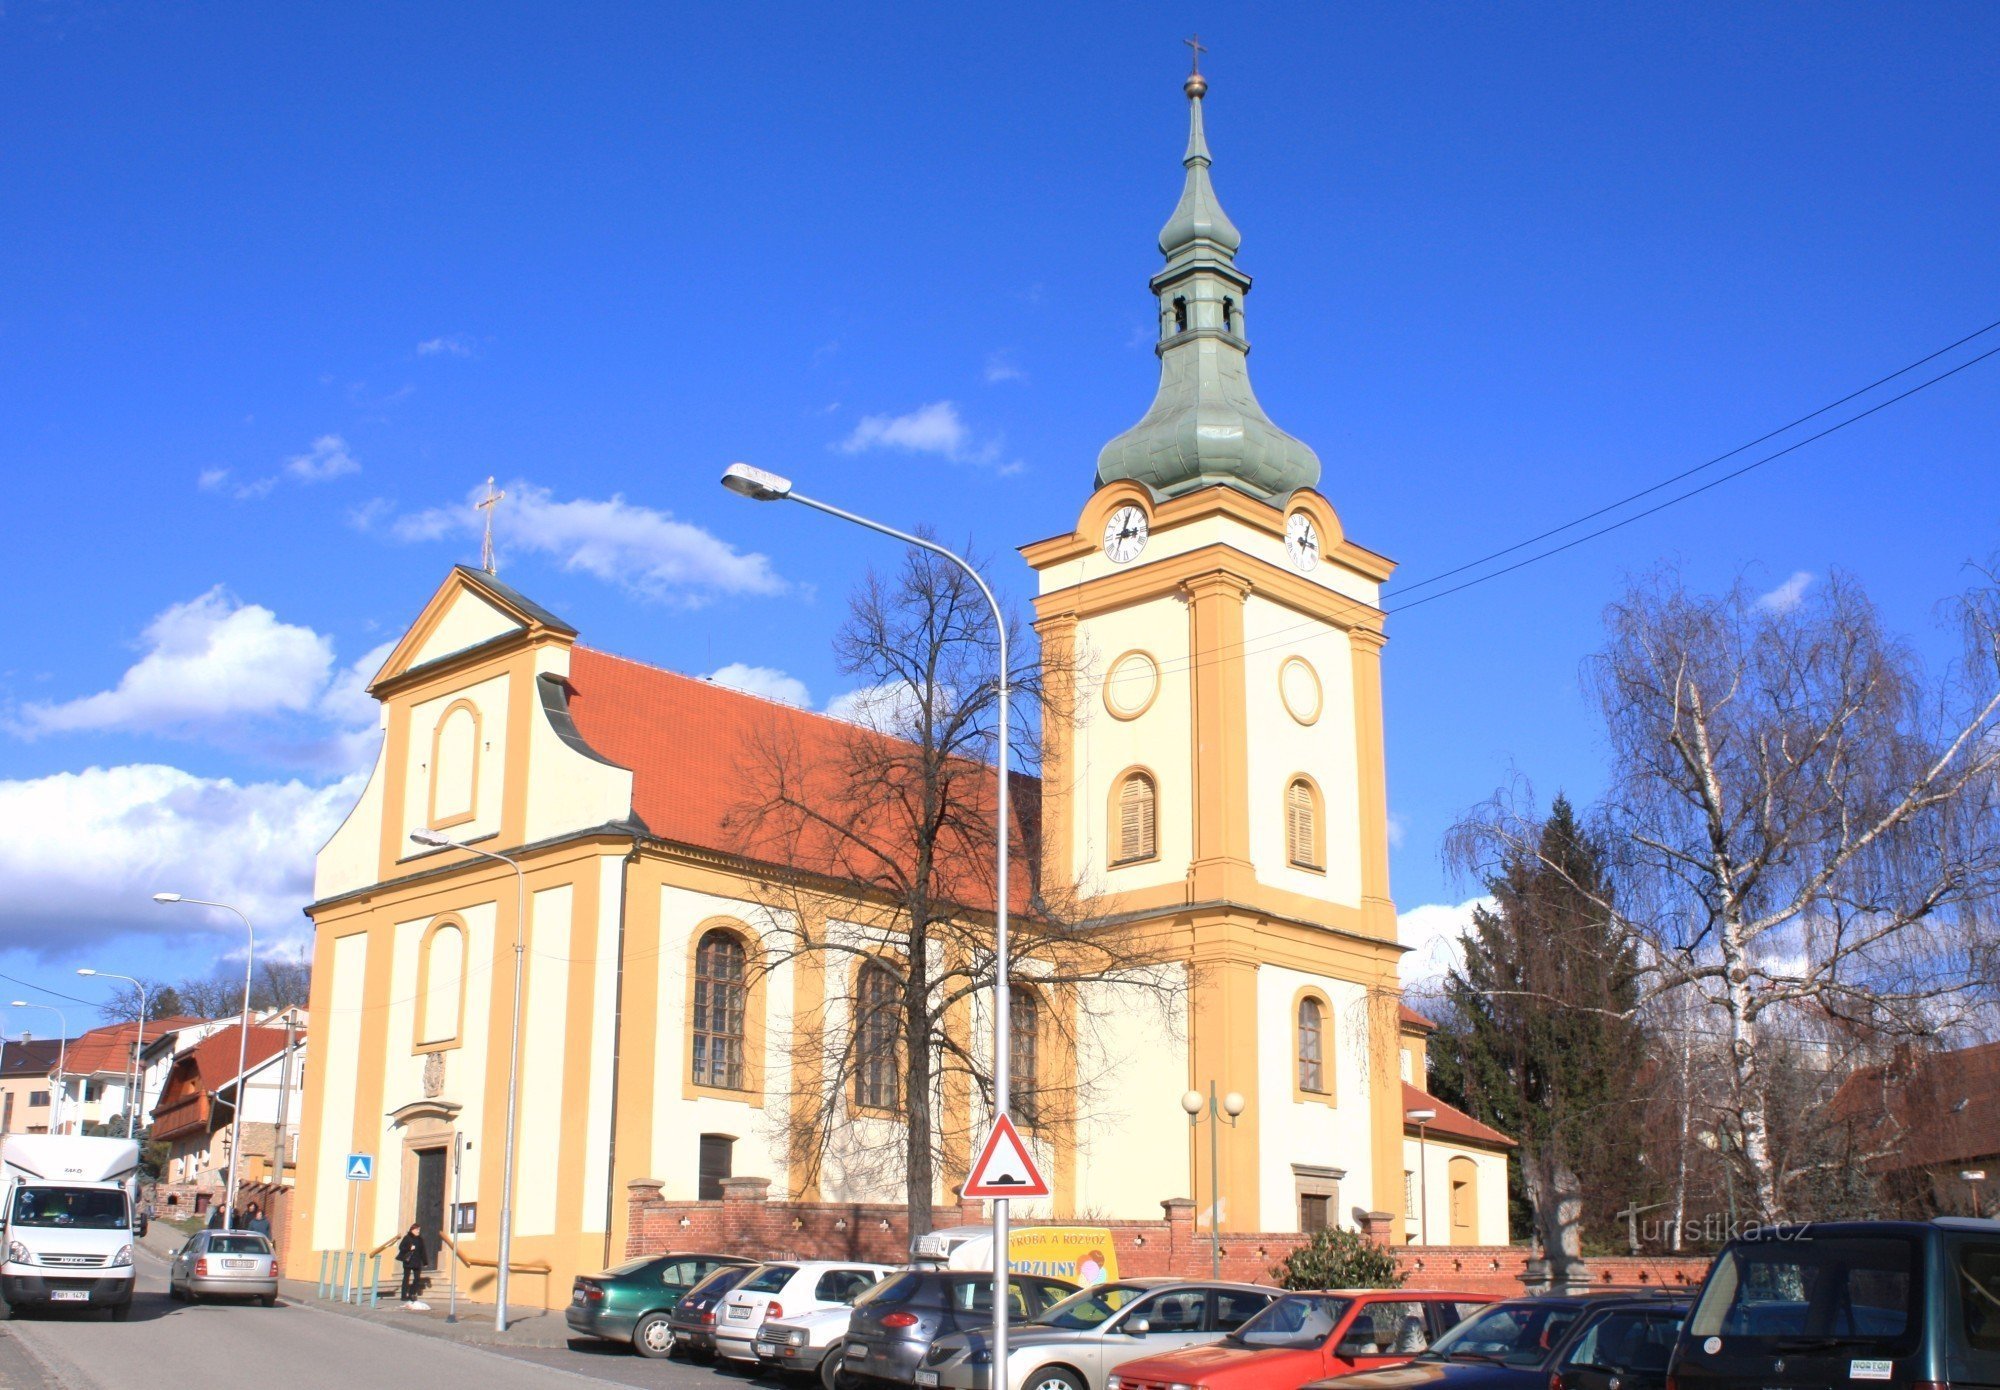 Šlapanice - Church of the Assumption of the Virgin Mary